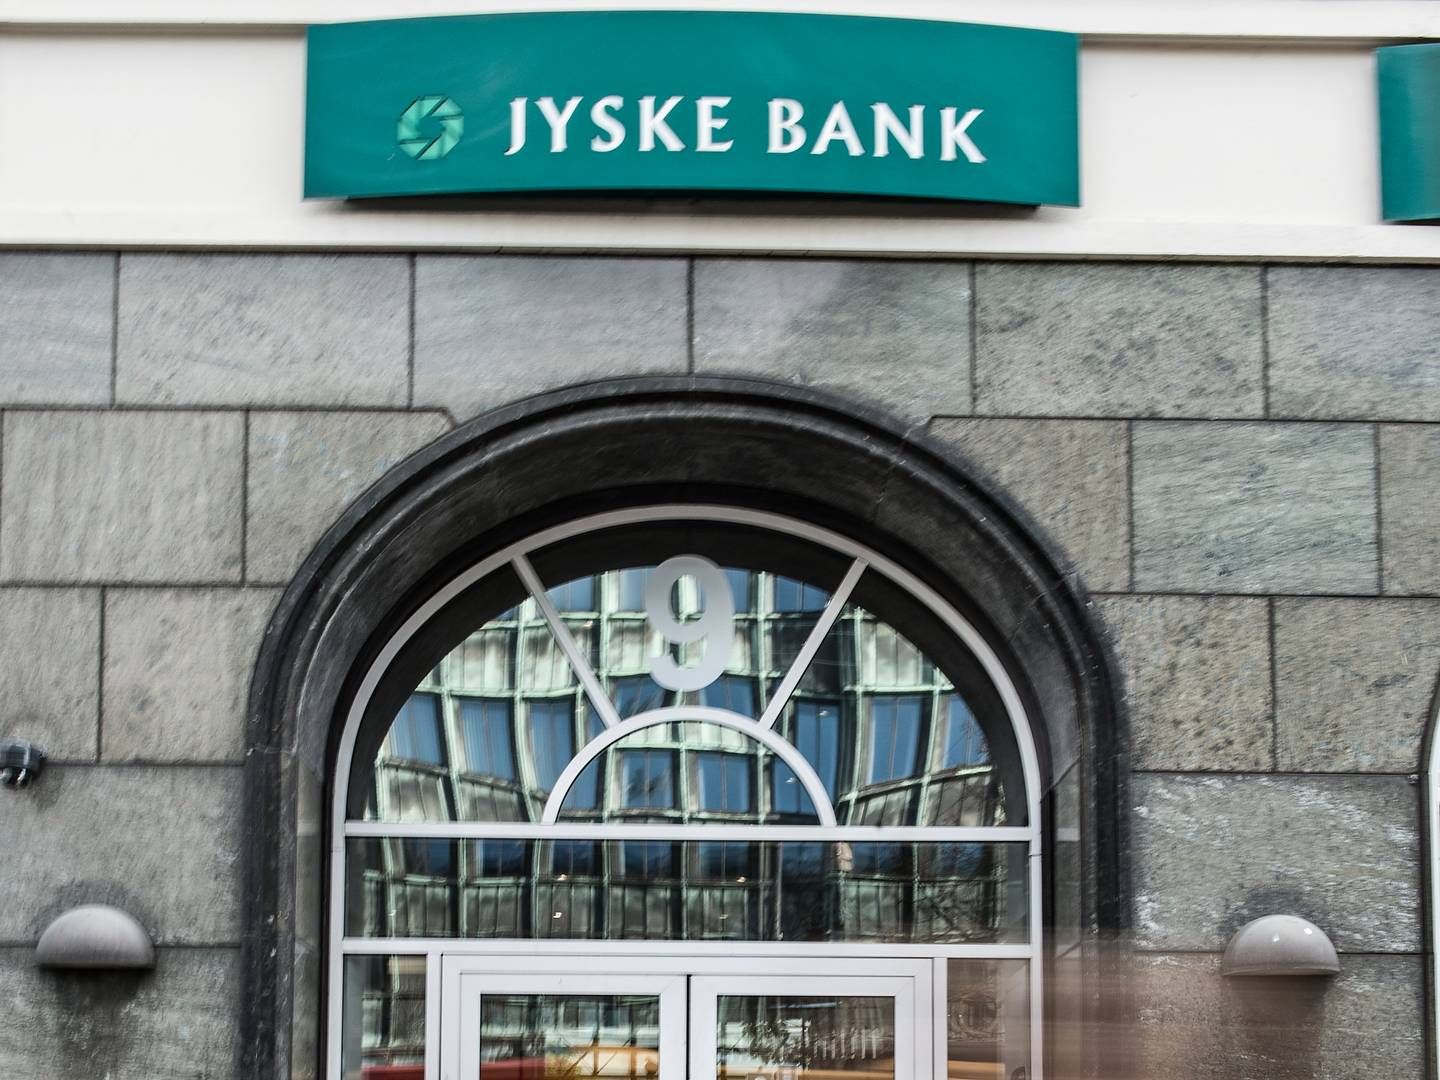 Jyske Bank og Handelsbanken har sammenlagt 123 filialer på landsplan, men det kommer væsentligt ned i løbet af 2023, fortæller Lars Mørch, direktør for forretningsstrategi i Jyske Bank. | Foto: Jonas Olufson